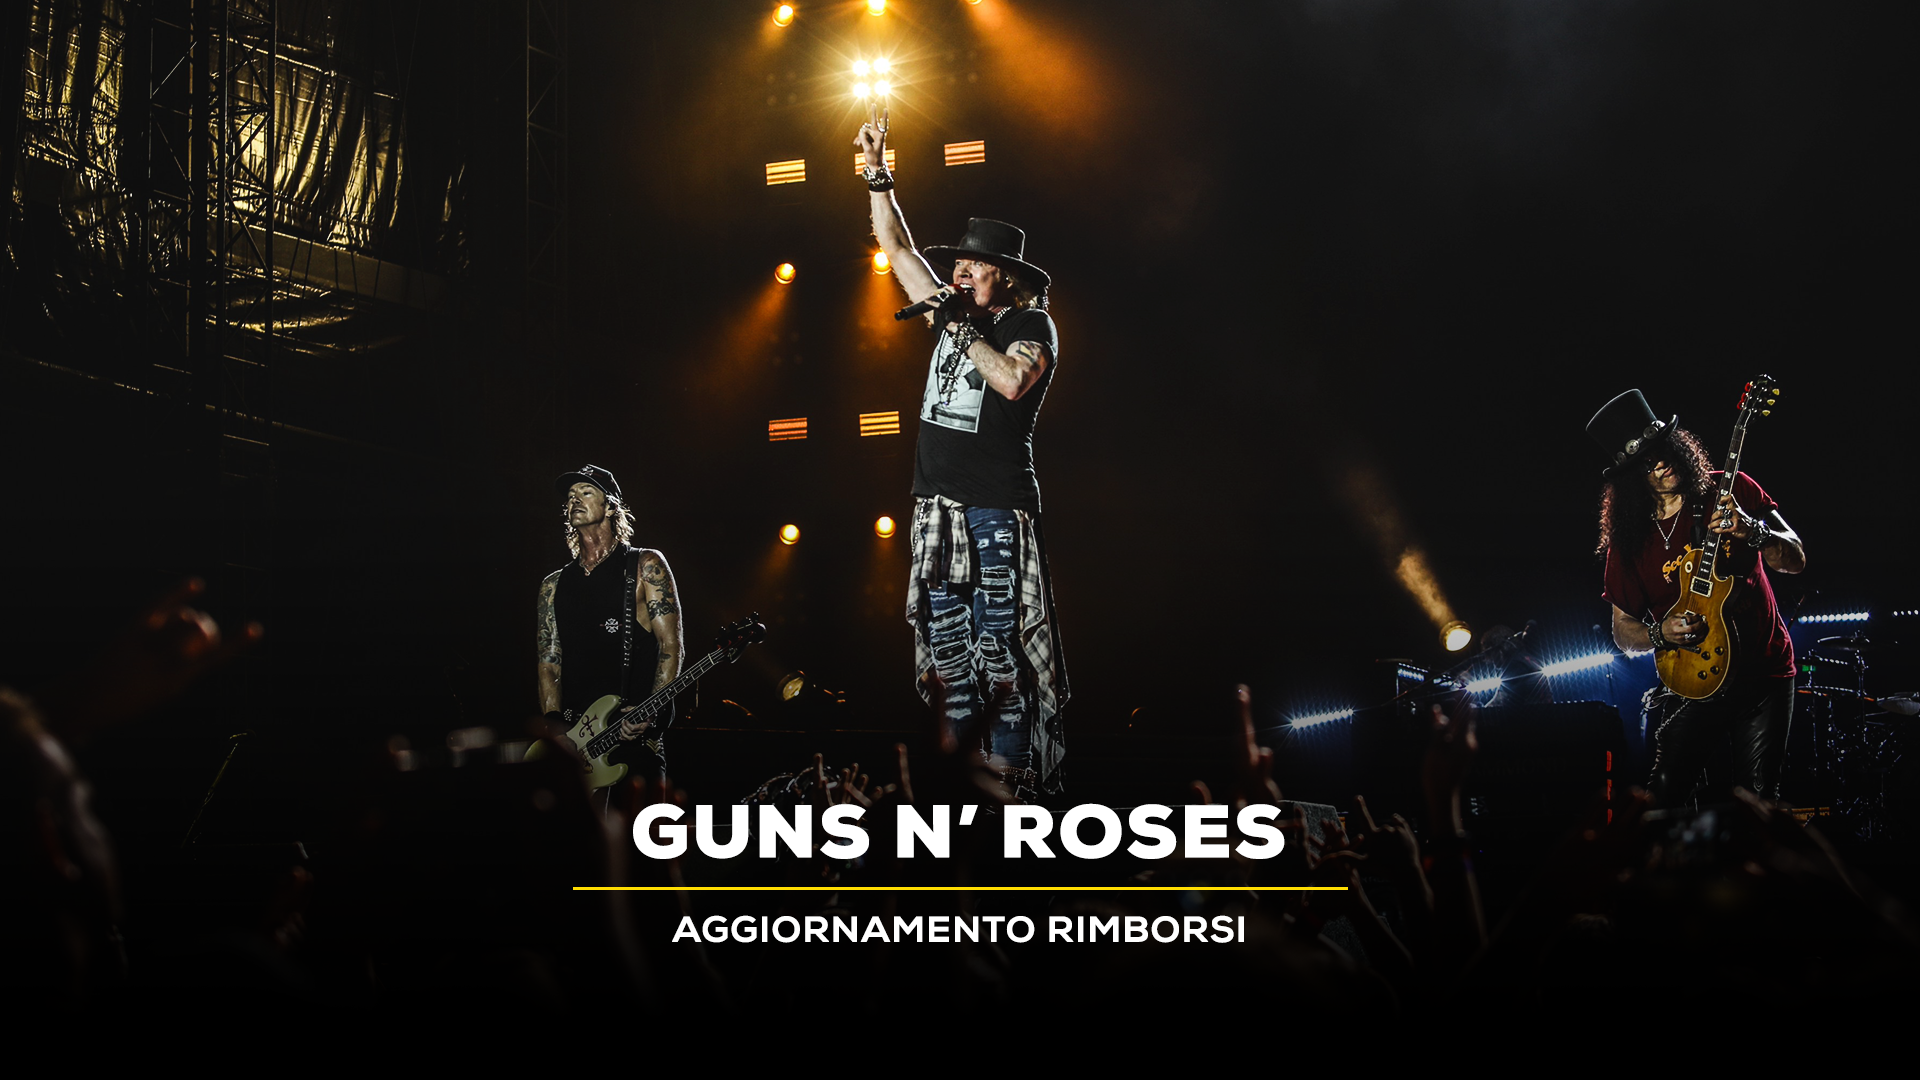 Aggiornamento rimborsi per lo show dei Guns N